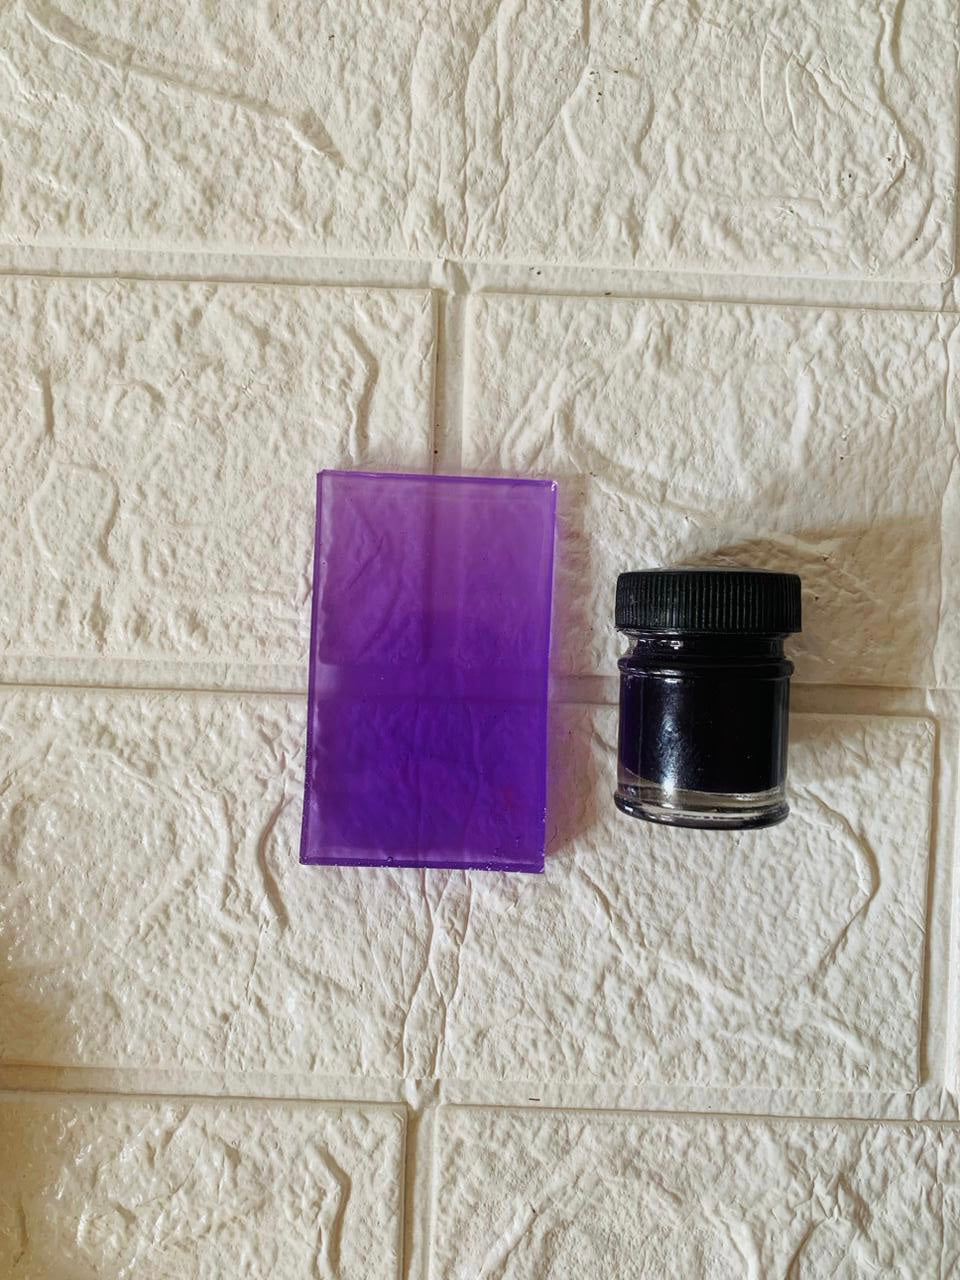 Translucent violet pigment